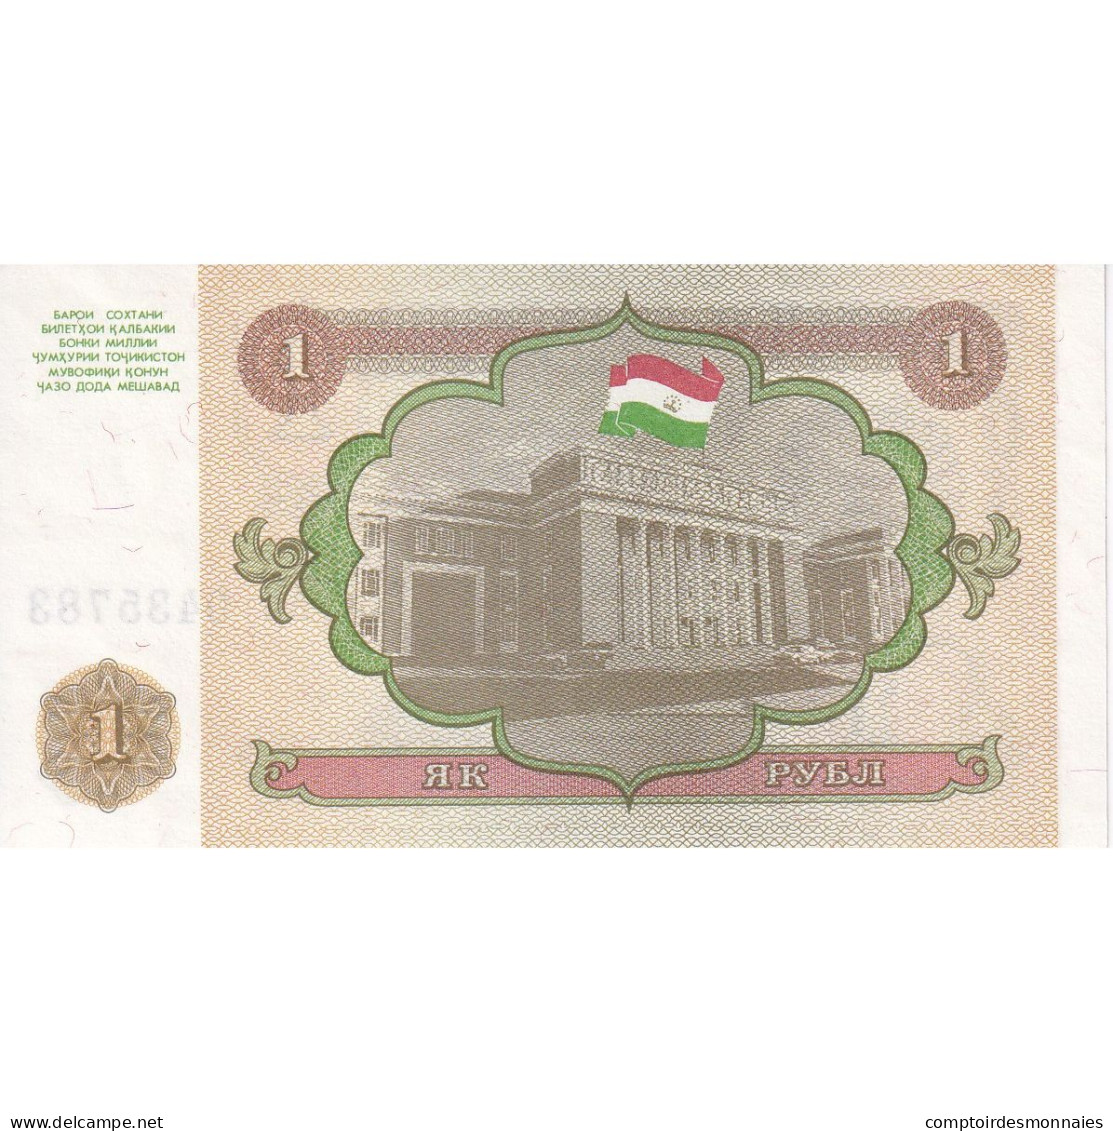 Tadjikistan, 1 Ruble, 1994, KM:1a, NEUF - Tadzjikistan